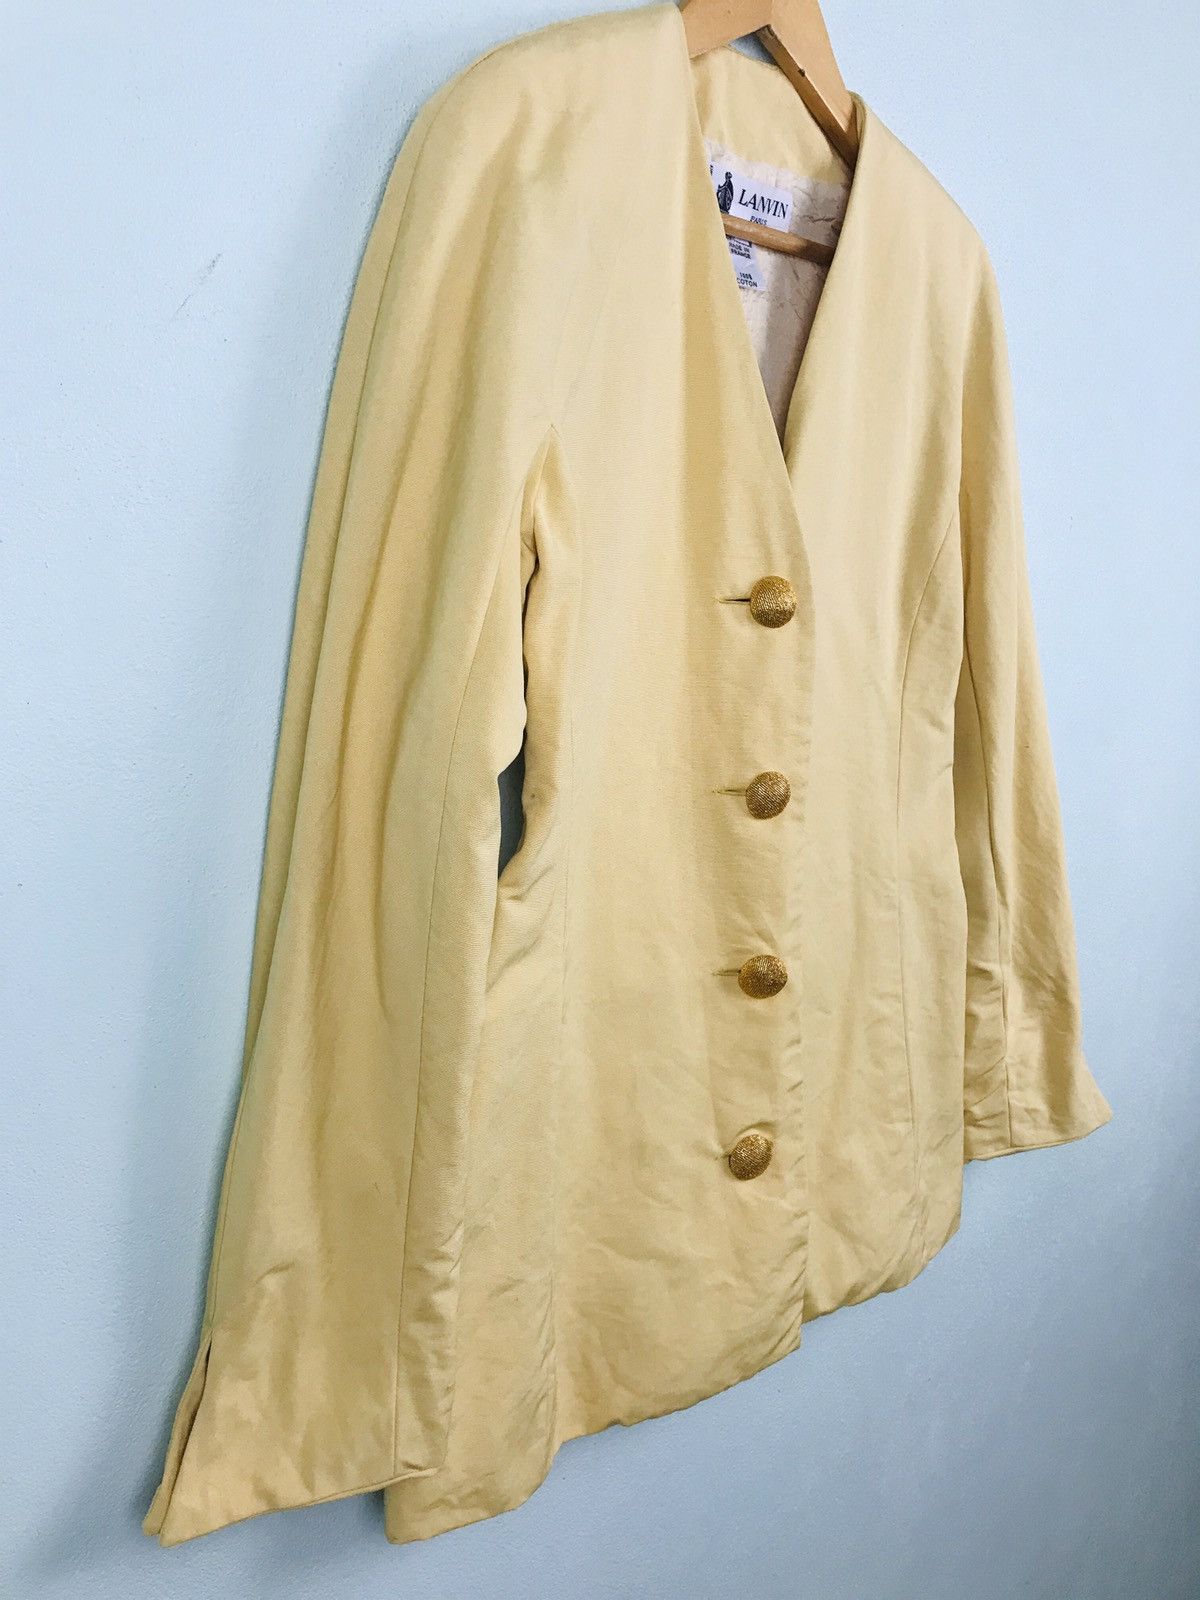 Lanvin Paris jacket with gold button - gh1519 - 2